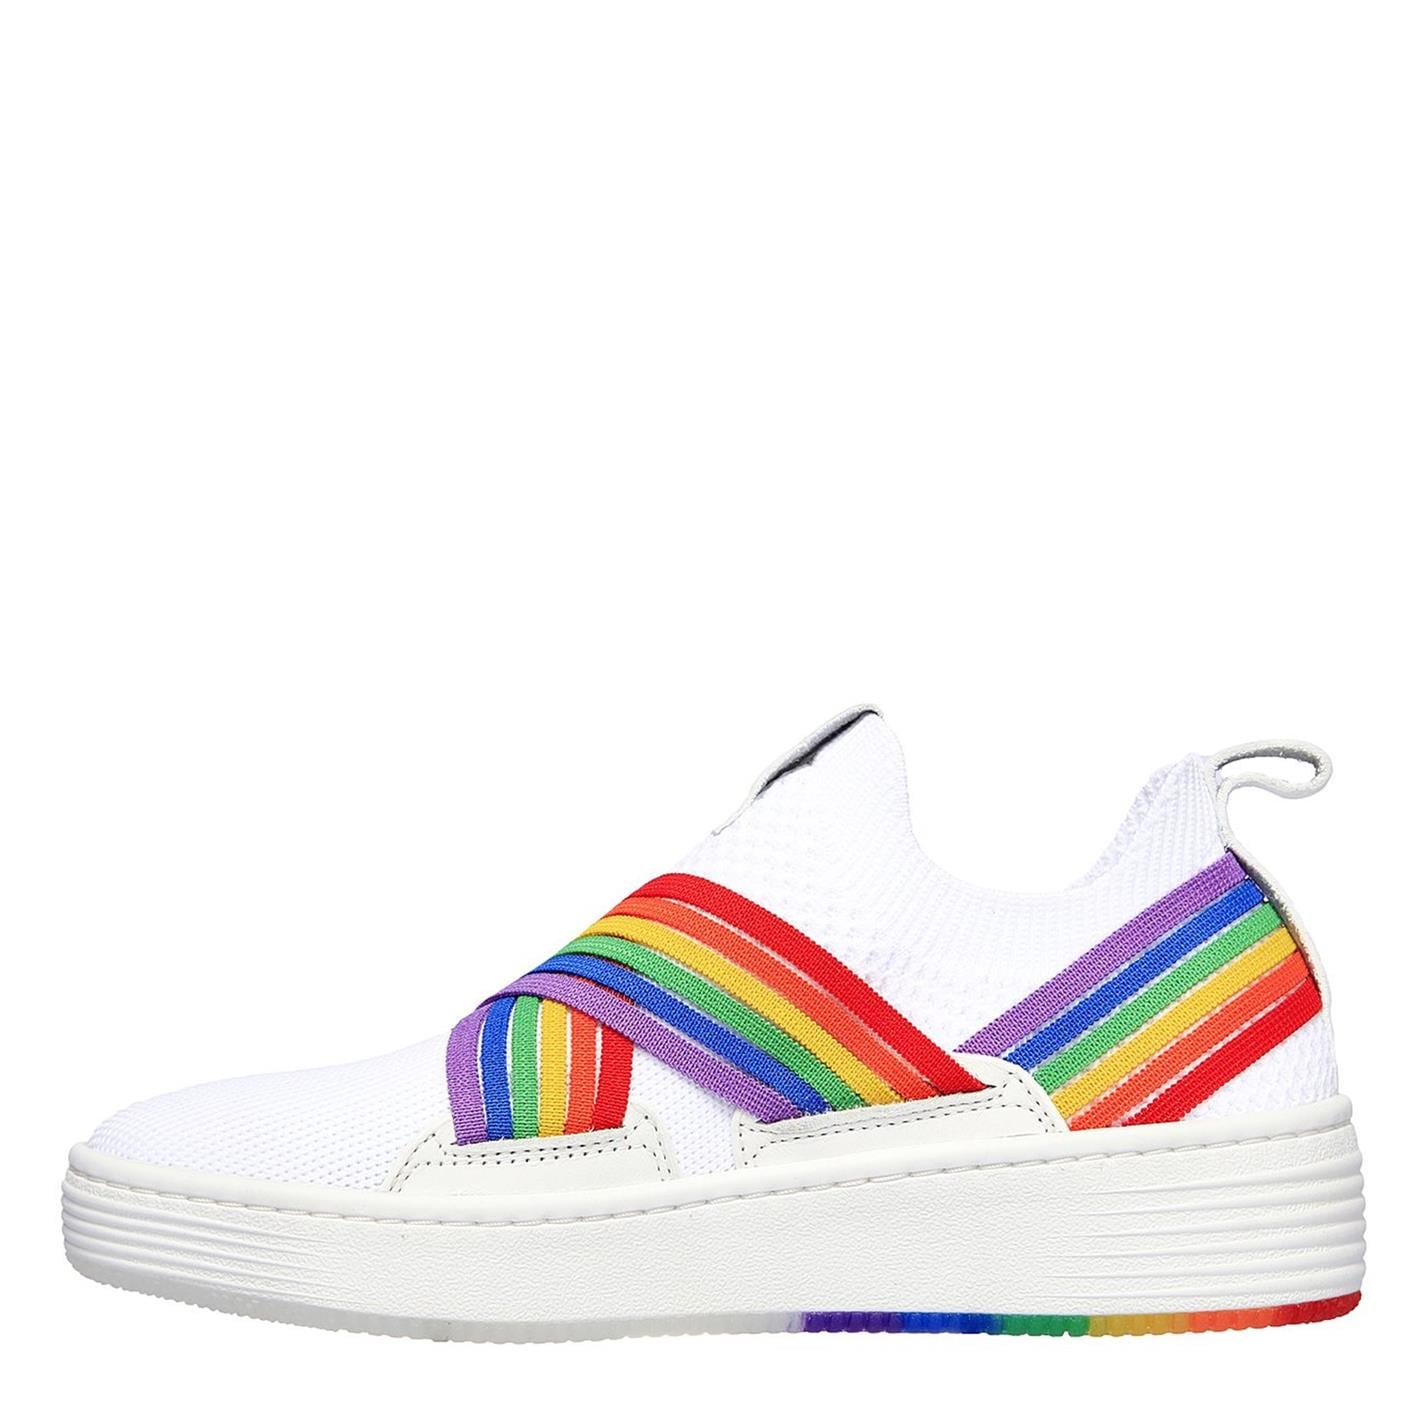 Adidasi sport Skechers Palmilla - Kyrie pentru femei alb multicolor